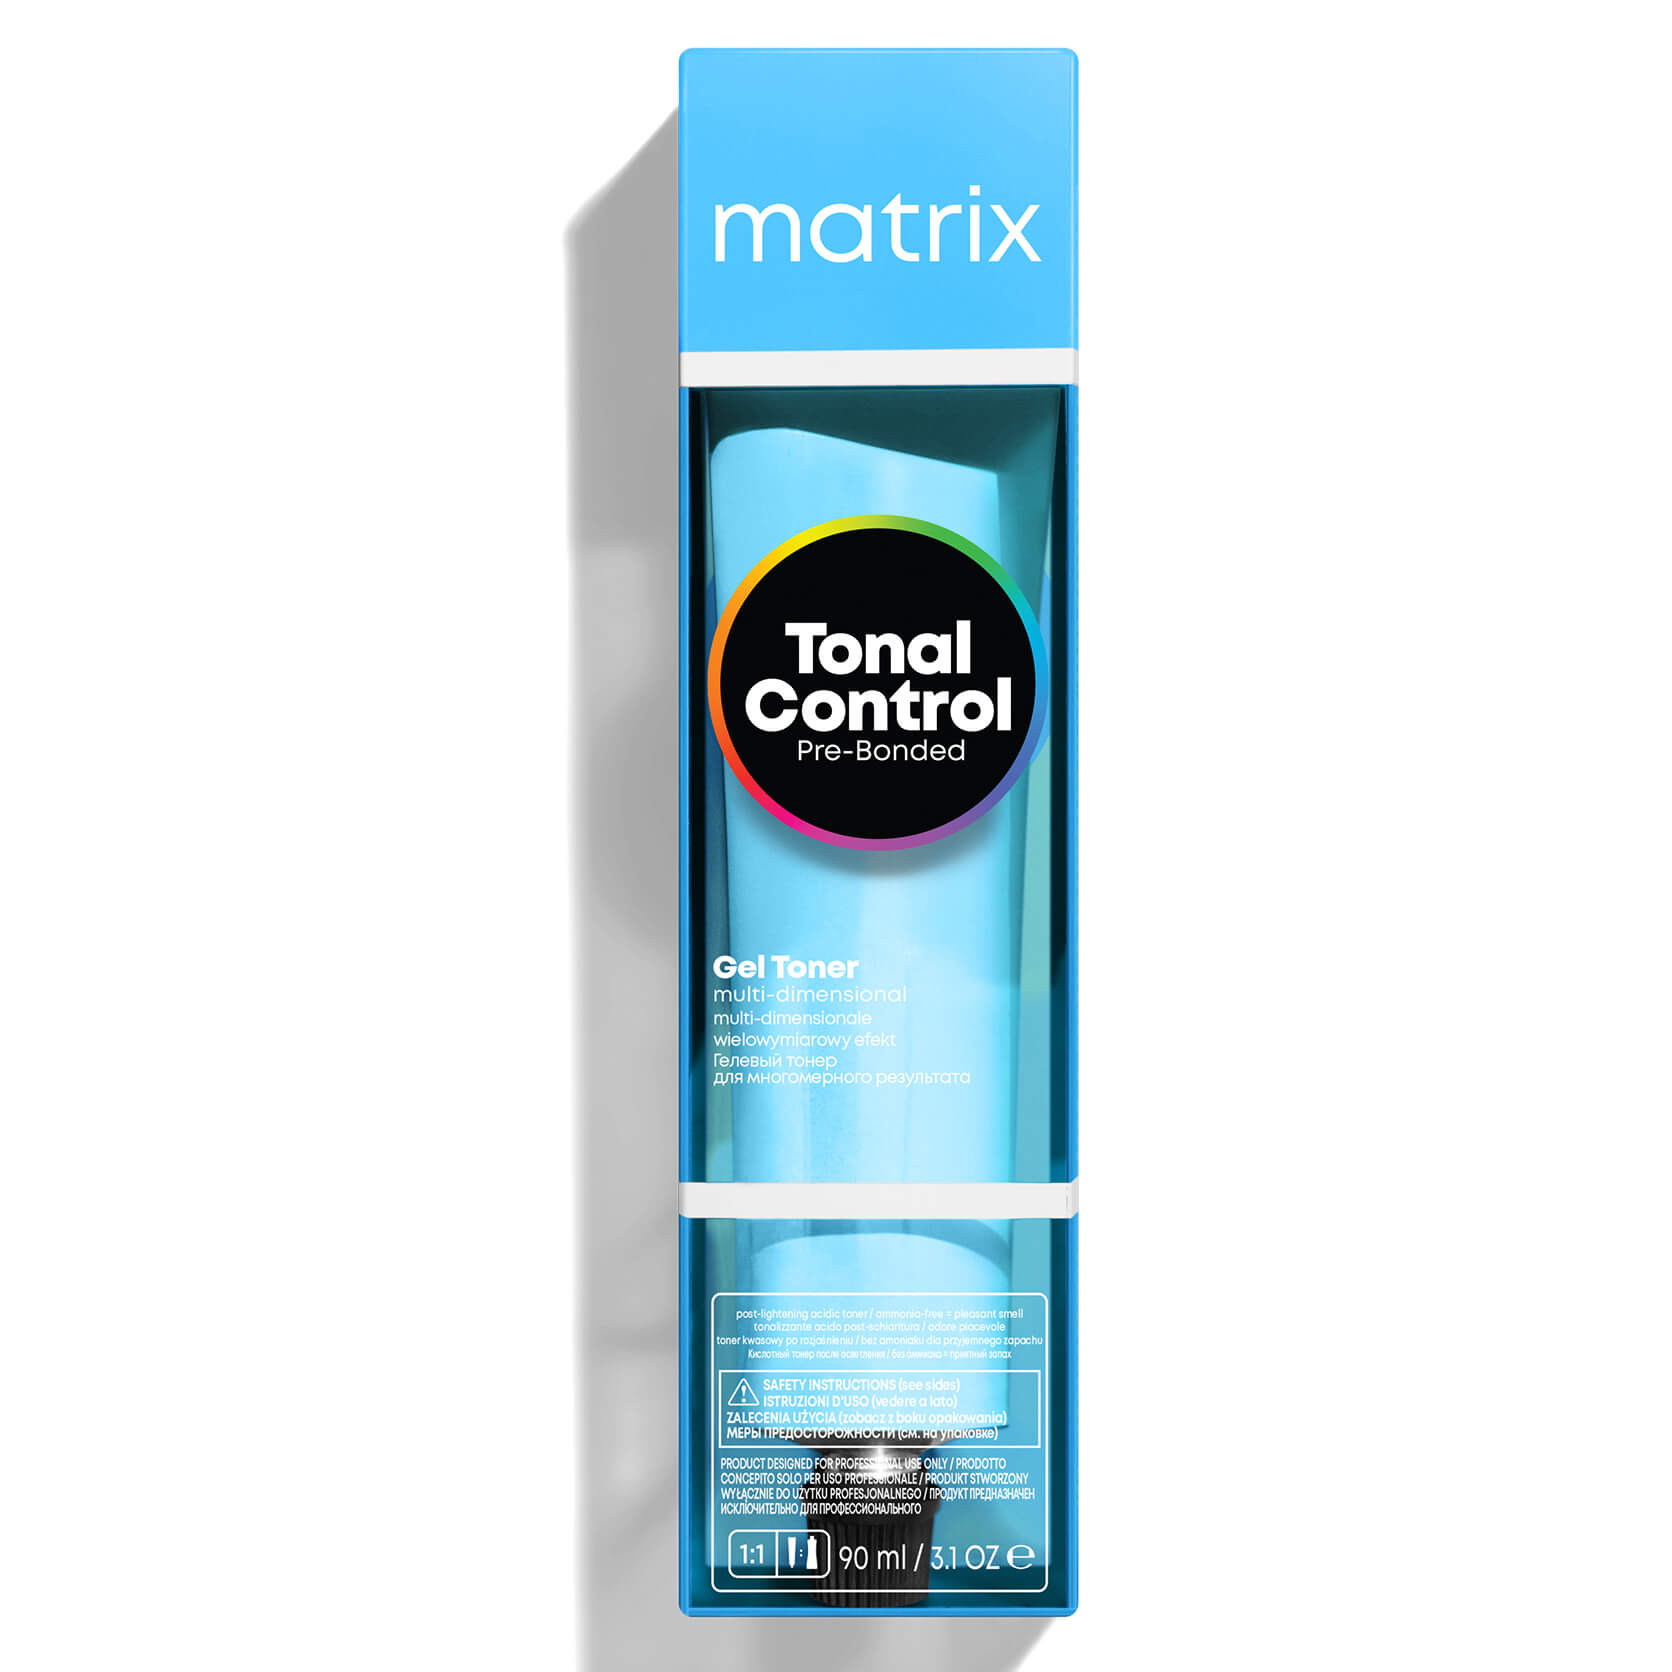 Matrix Tonal Control Pre-Bonded Gel Toner - 4AA 90ml